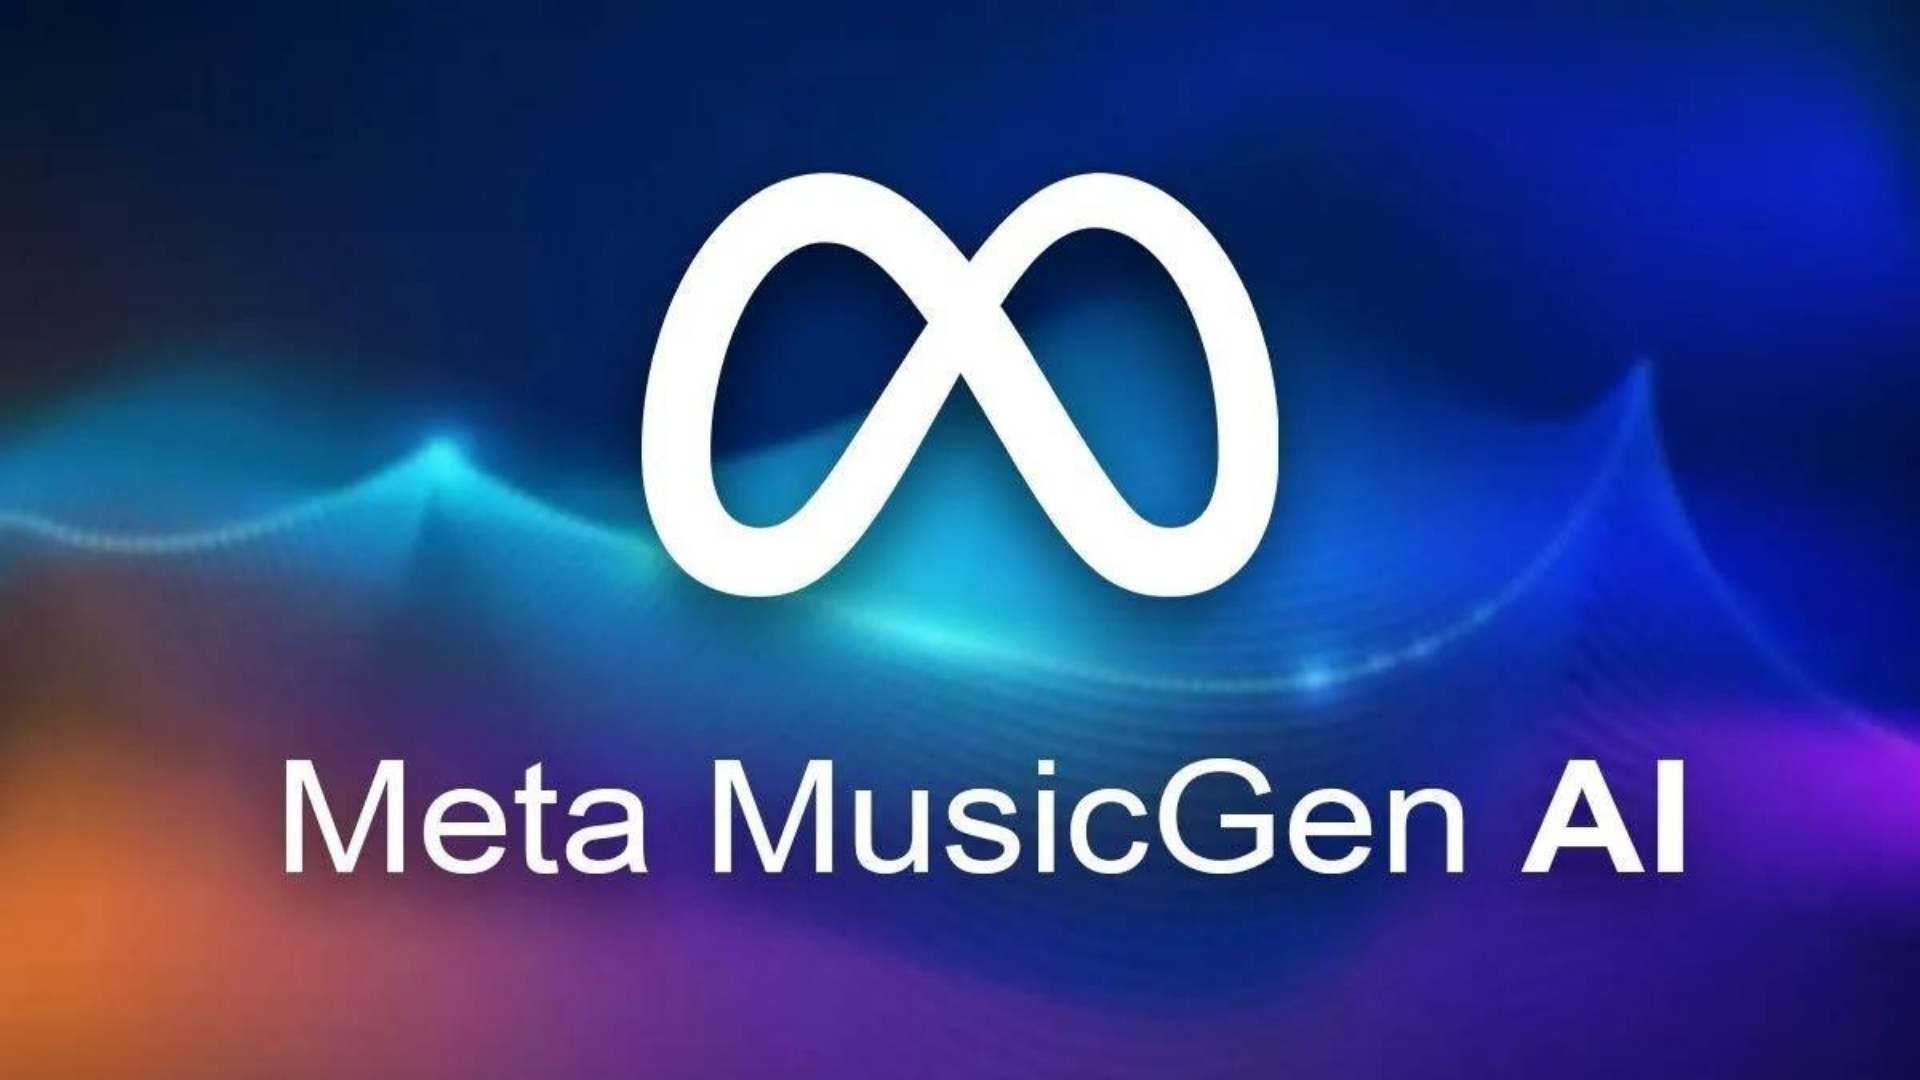 Meta'nın Sunduğu Yapay Zeka ile Müzik Oluşturma Aracı: MusicGen